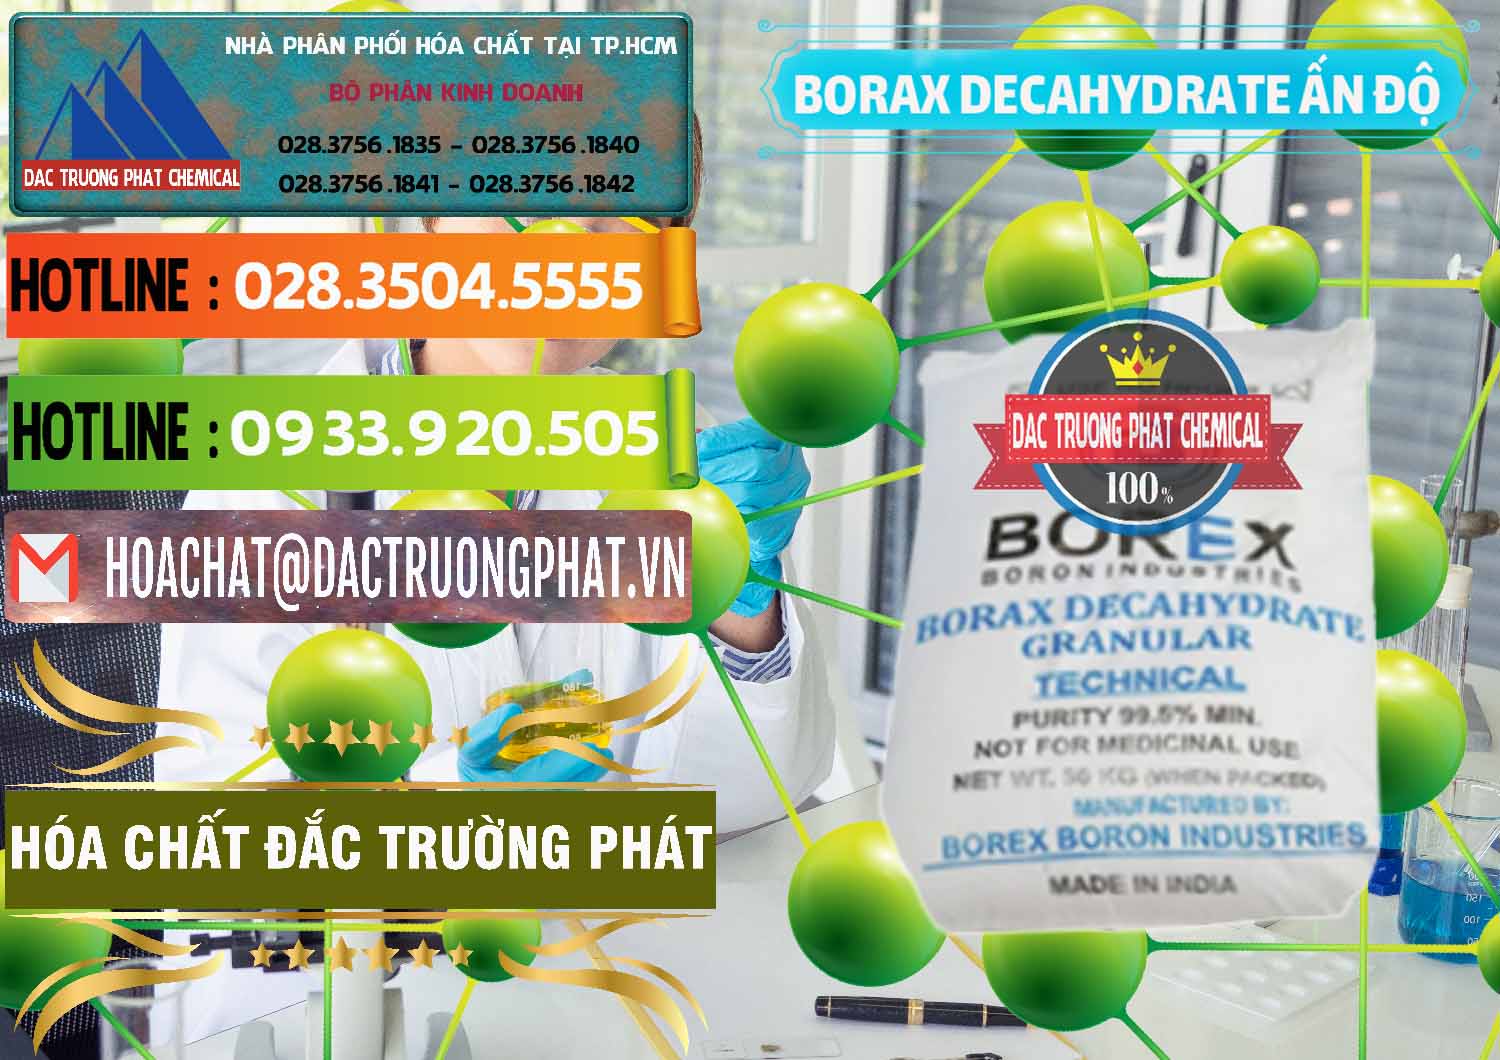 Đơn vị bán & cung ứng Borax Decahydrate Ấn Độ India - 0449 - Cty chuyên bán & phân phối hóa chất tại TP.HCM - cungcaphoachat.com.vn